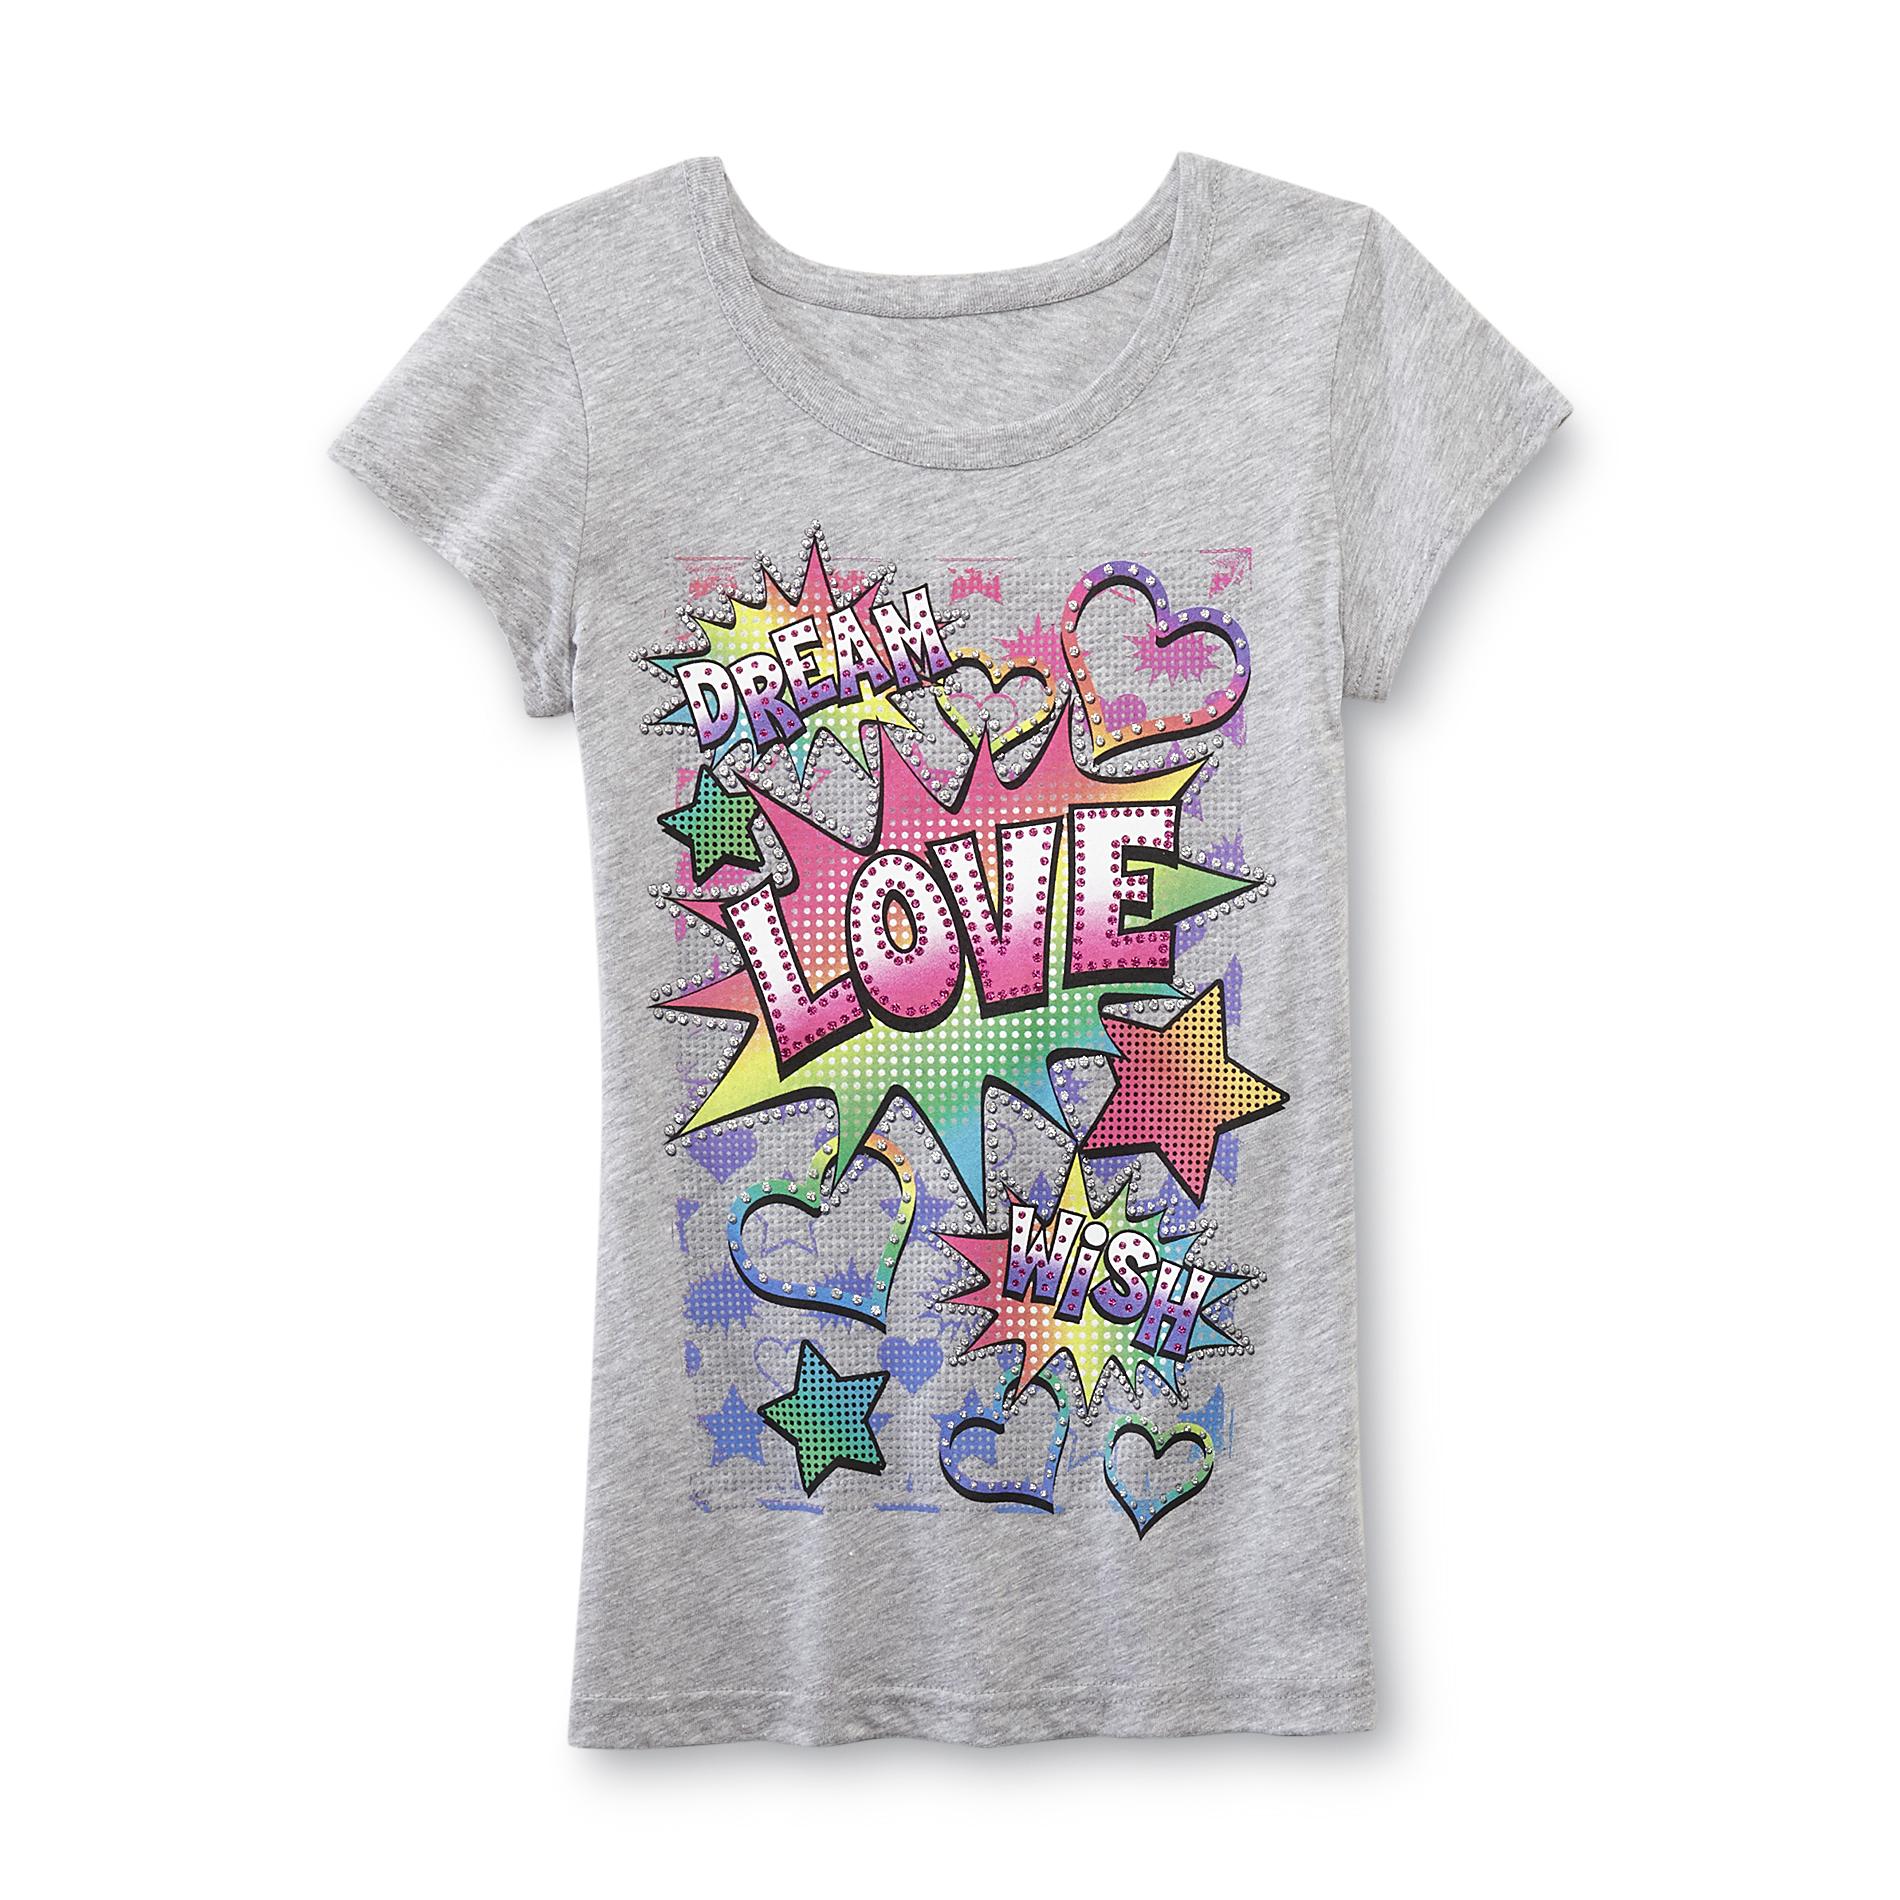 Girl's Graphic T-Shirt - Dream, Love, Wish